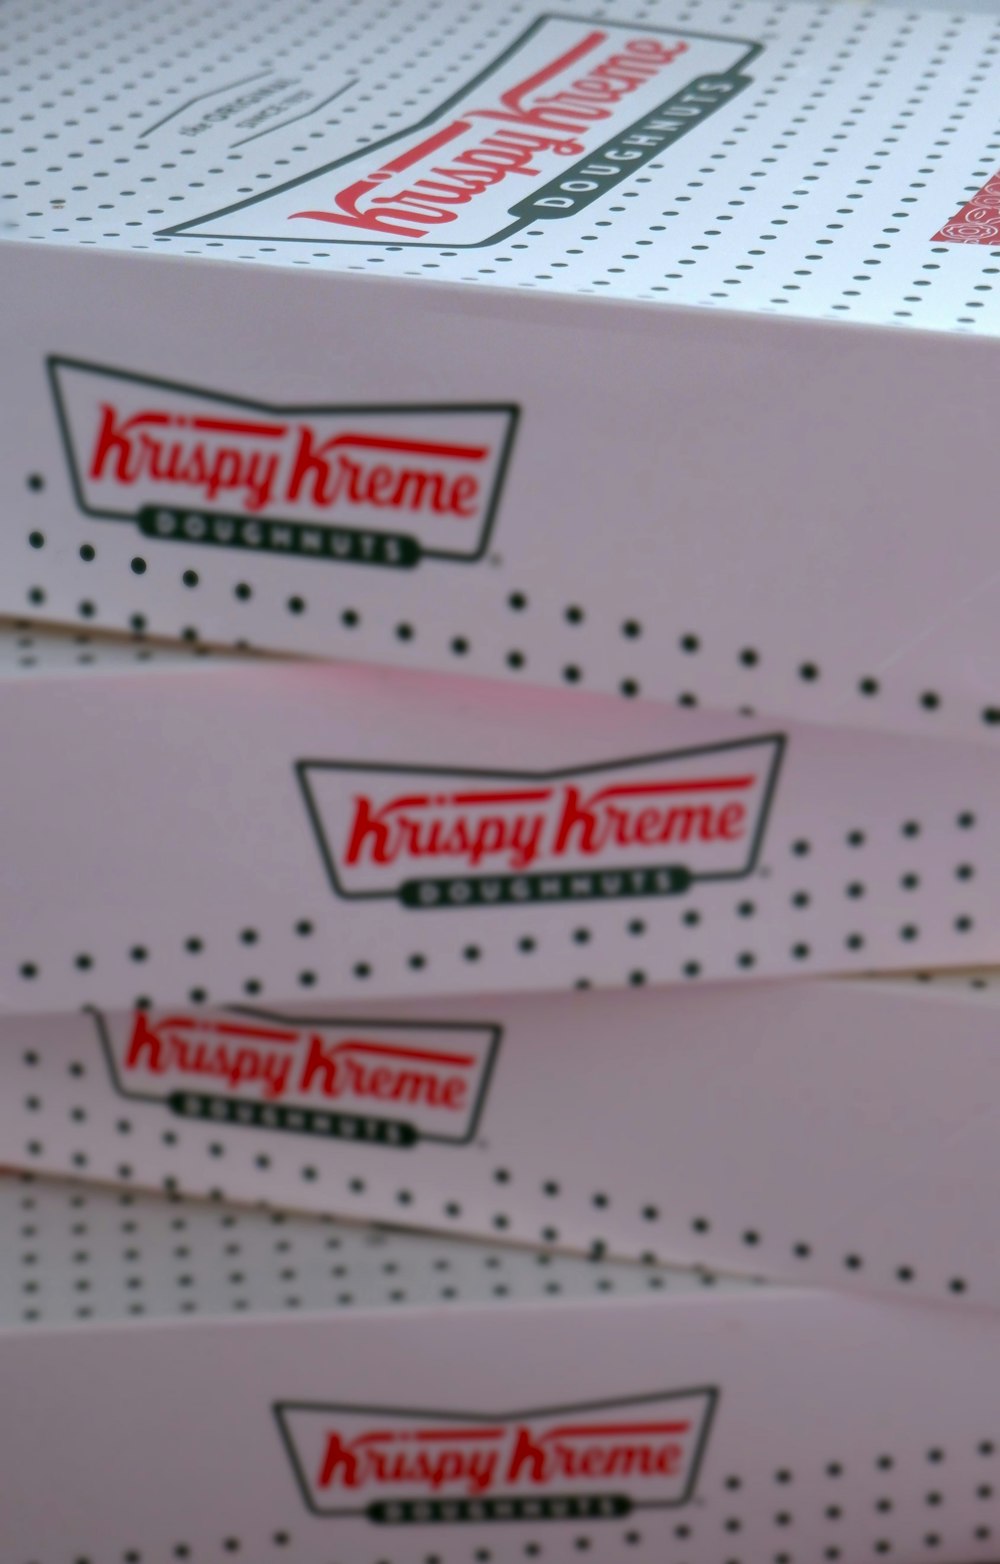 Trois boîtes de Krispy Kreme sont empilées les unes sur les autres